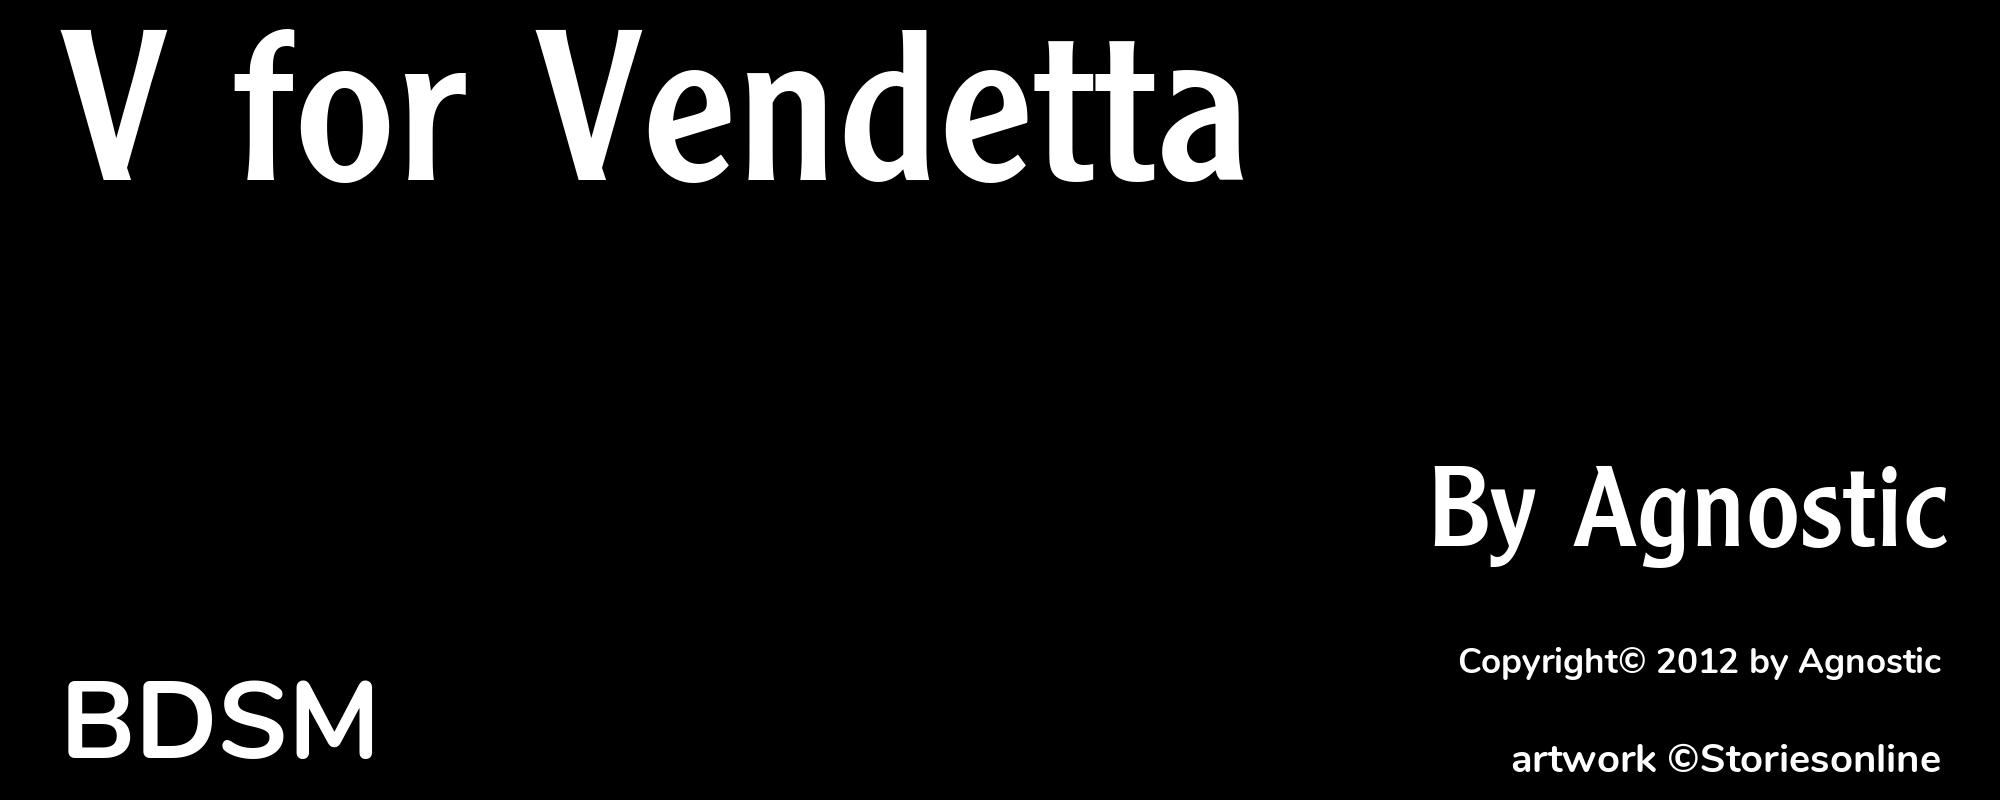 V for Vendetta - Cover